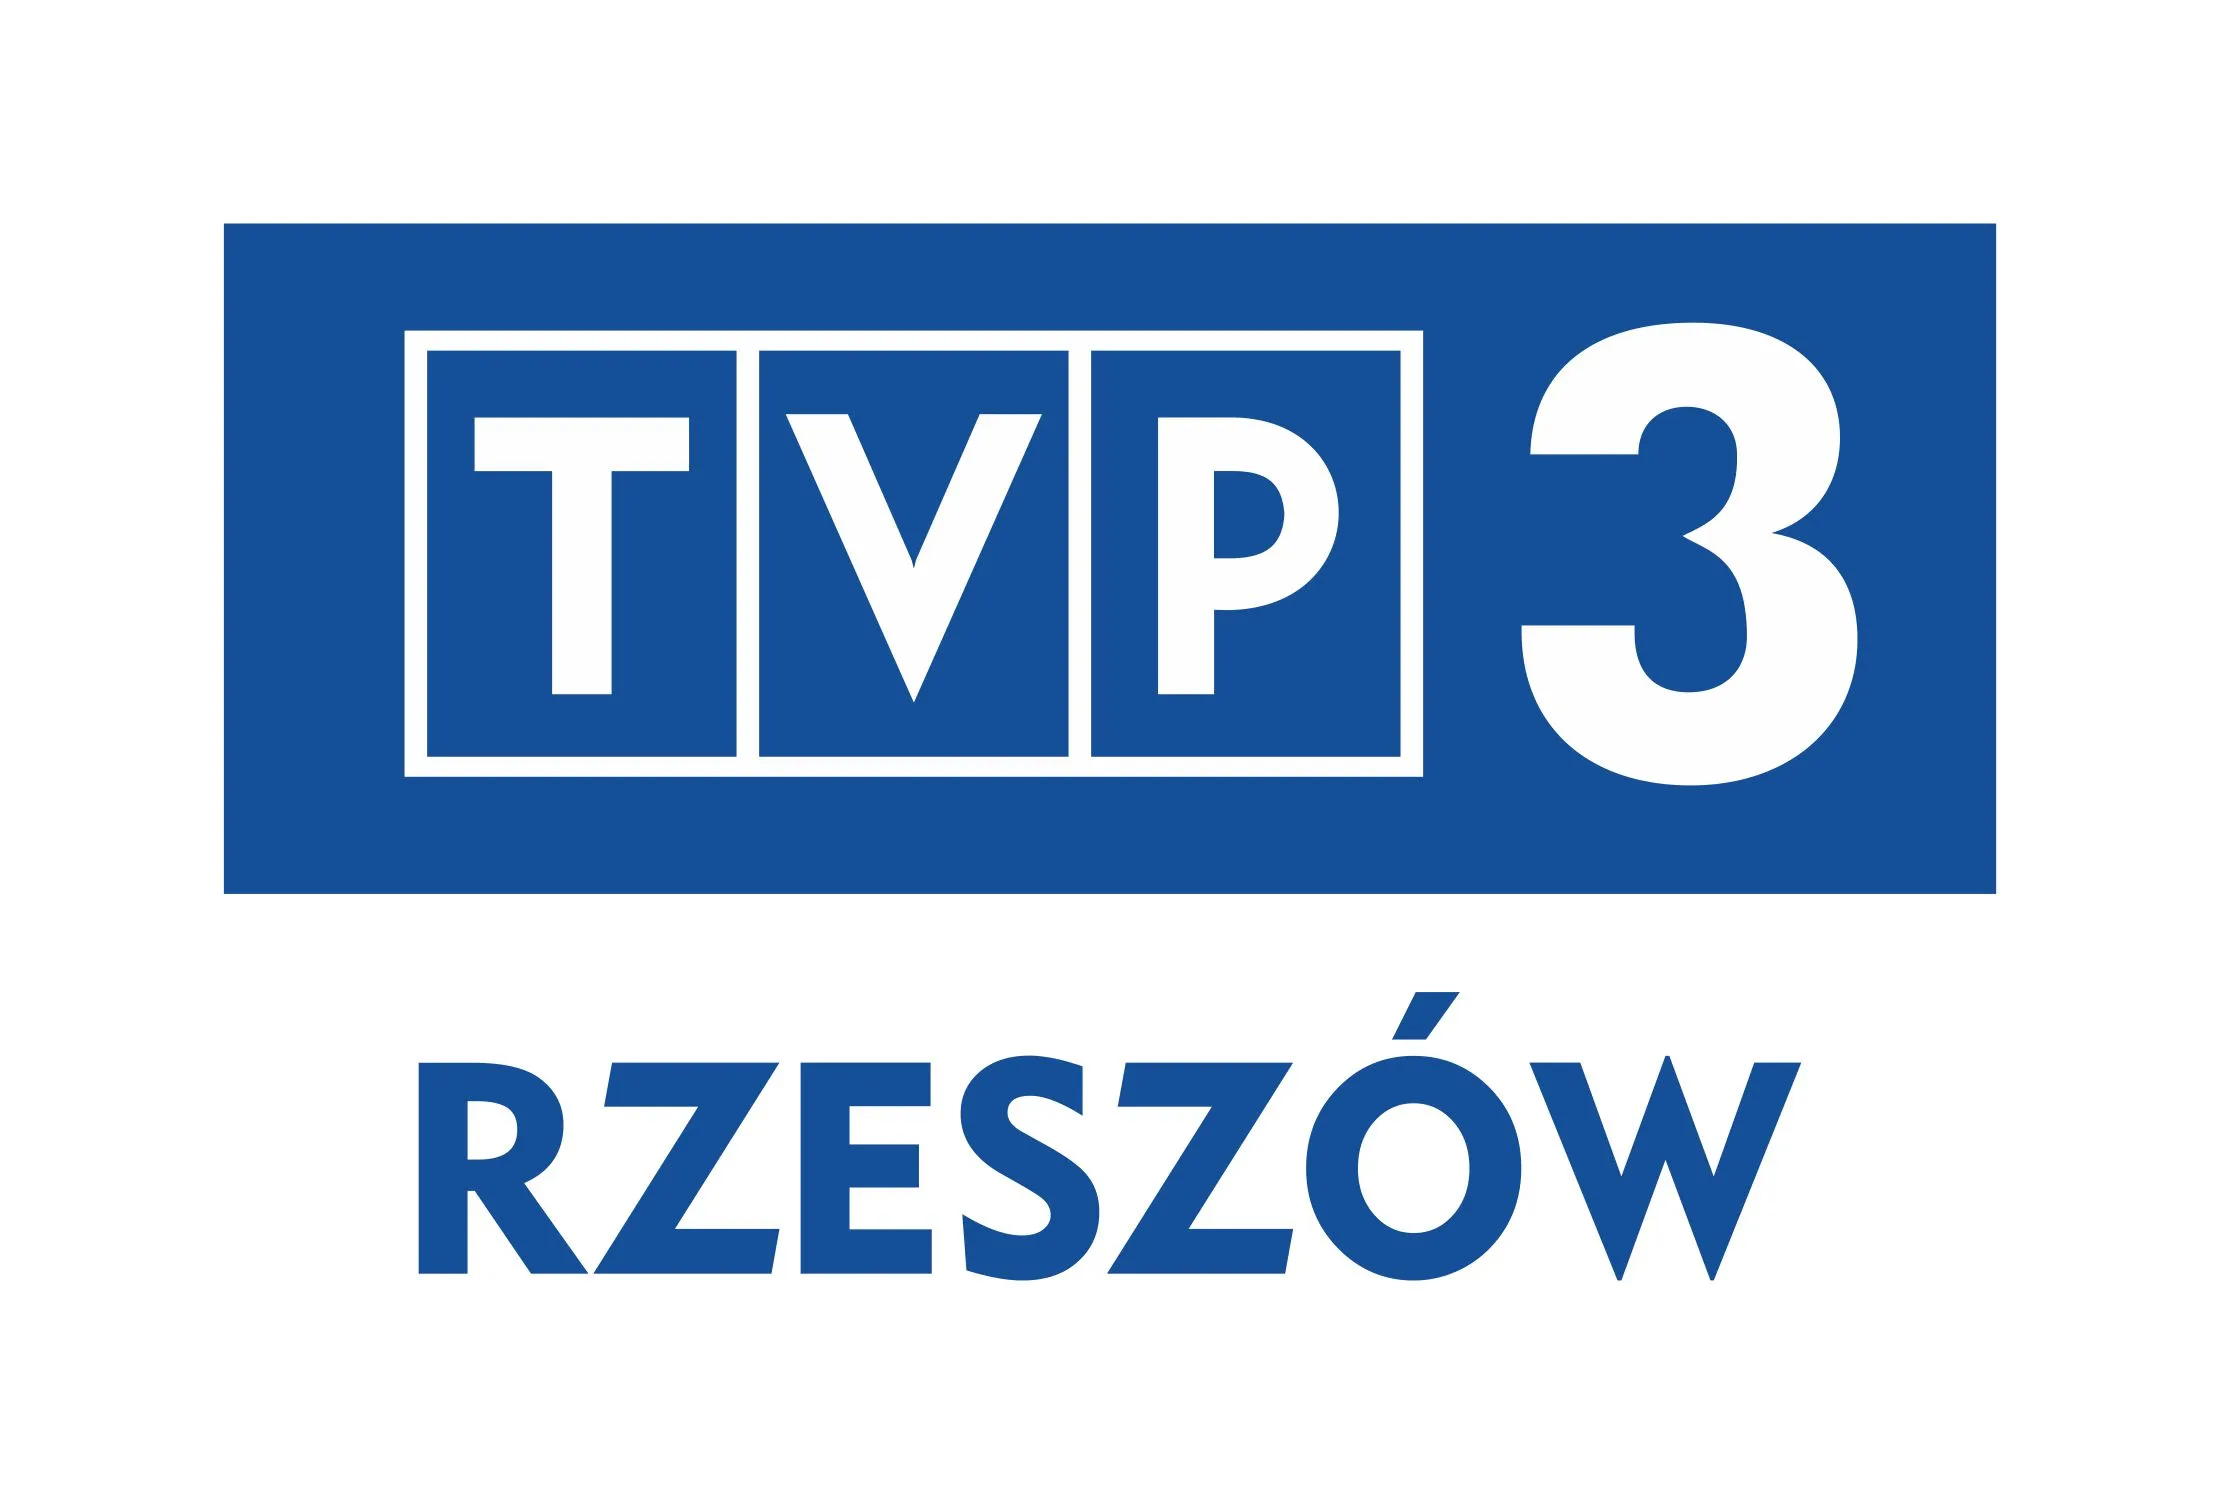 Fragment programu TVP3 Rzeszów nt. wielkanocne ozdoby na Warsztatach Terapii Zajęciowej w Przeworsku